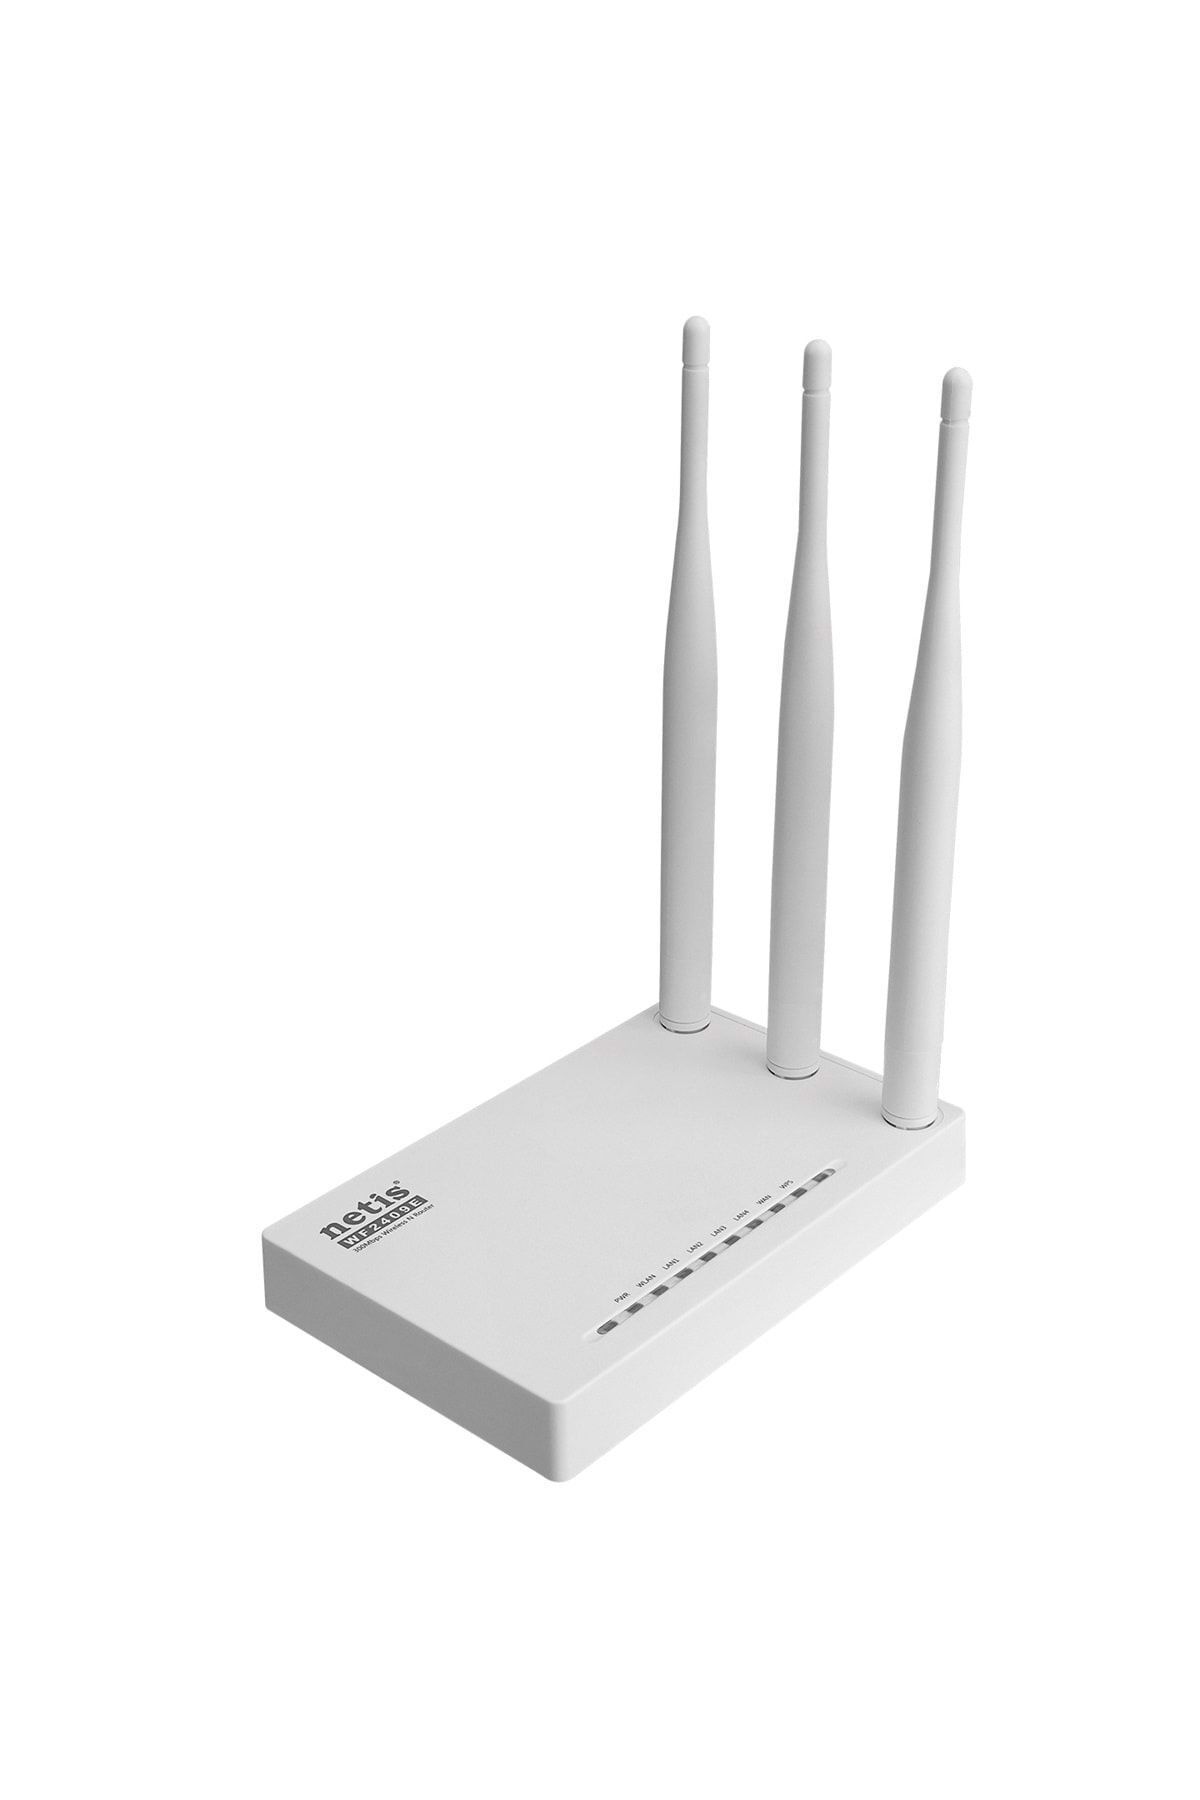 Netis Wf2409e 300mbps 2.4ghz 1 Wan+4 Lan 3x5 Dbi Anten Ap+repeater+wısp Wifi Router